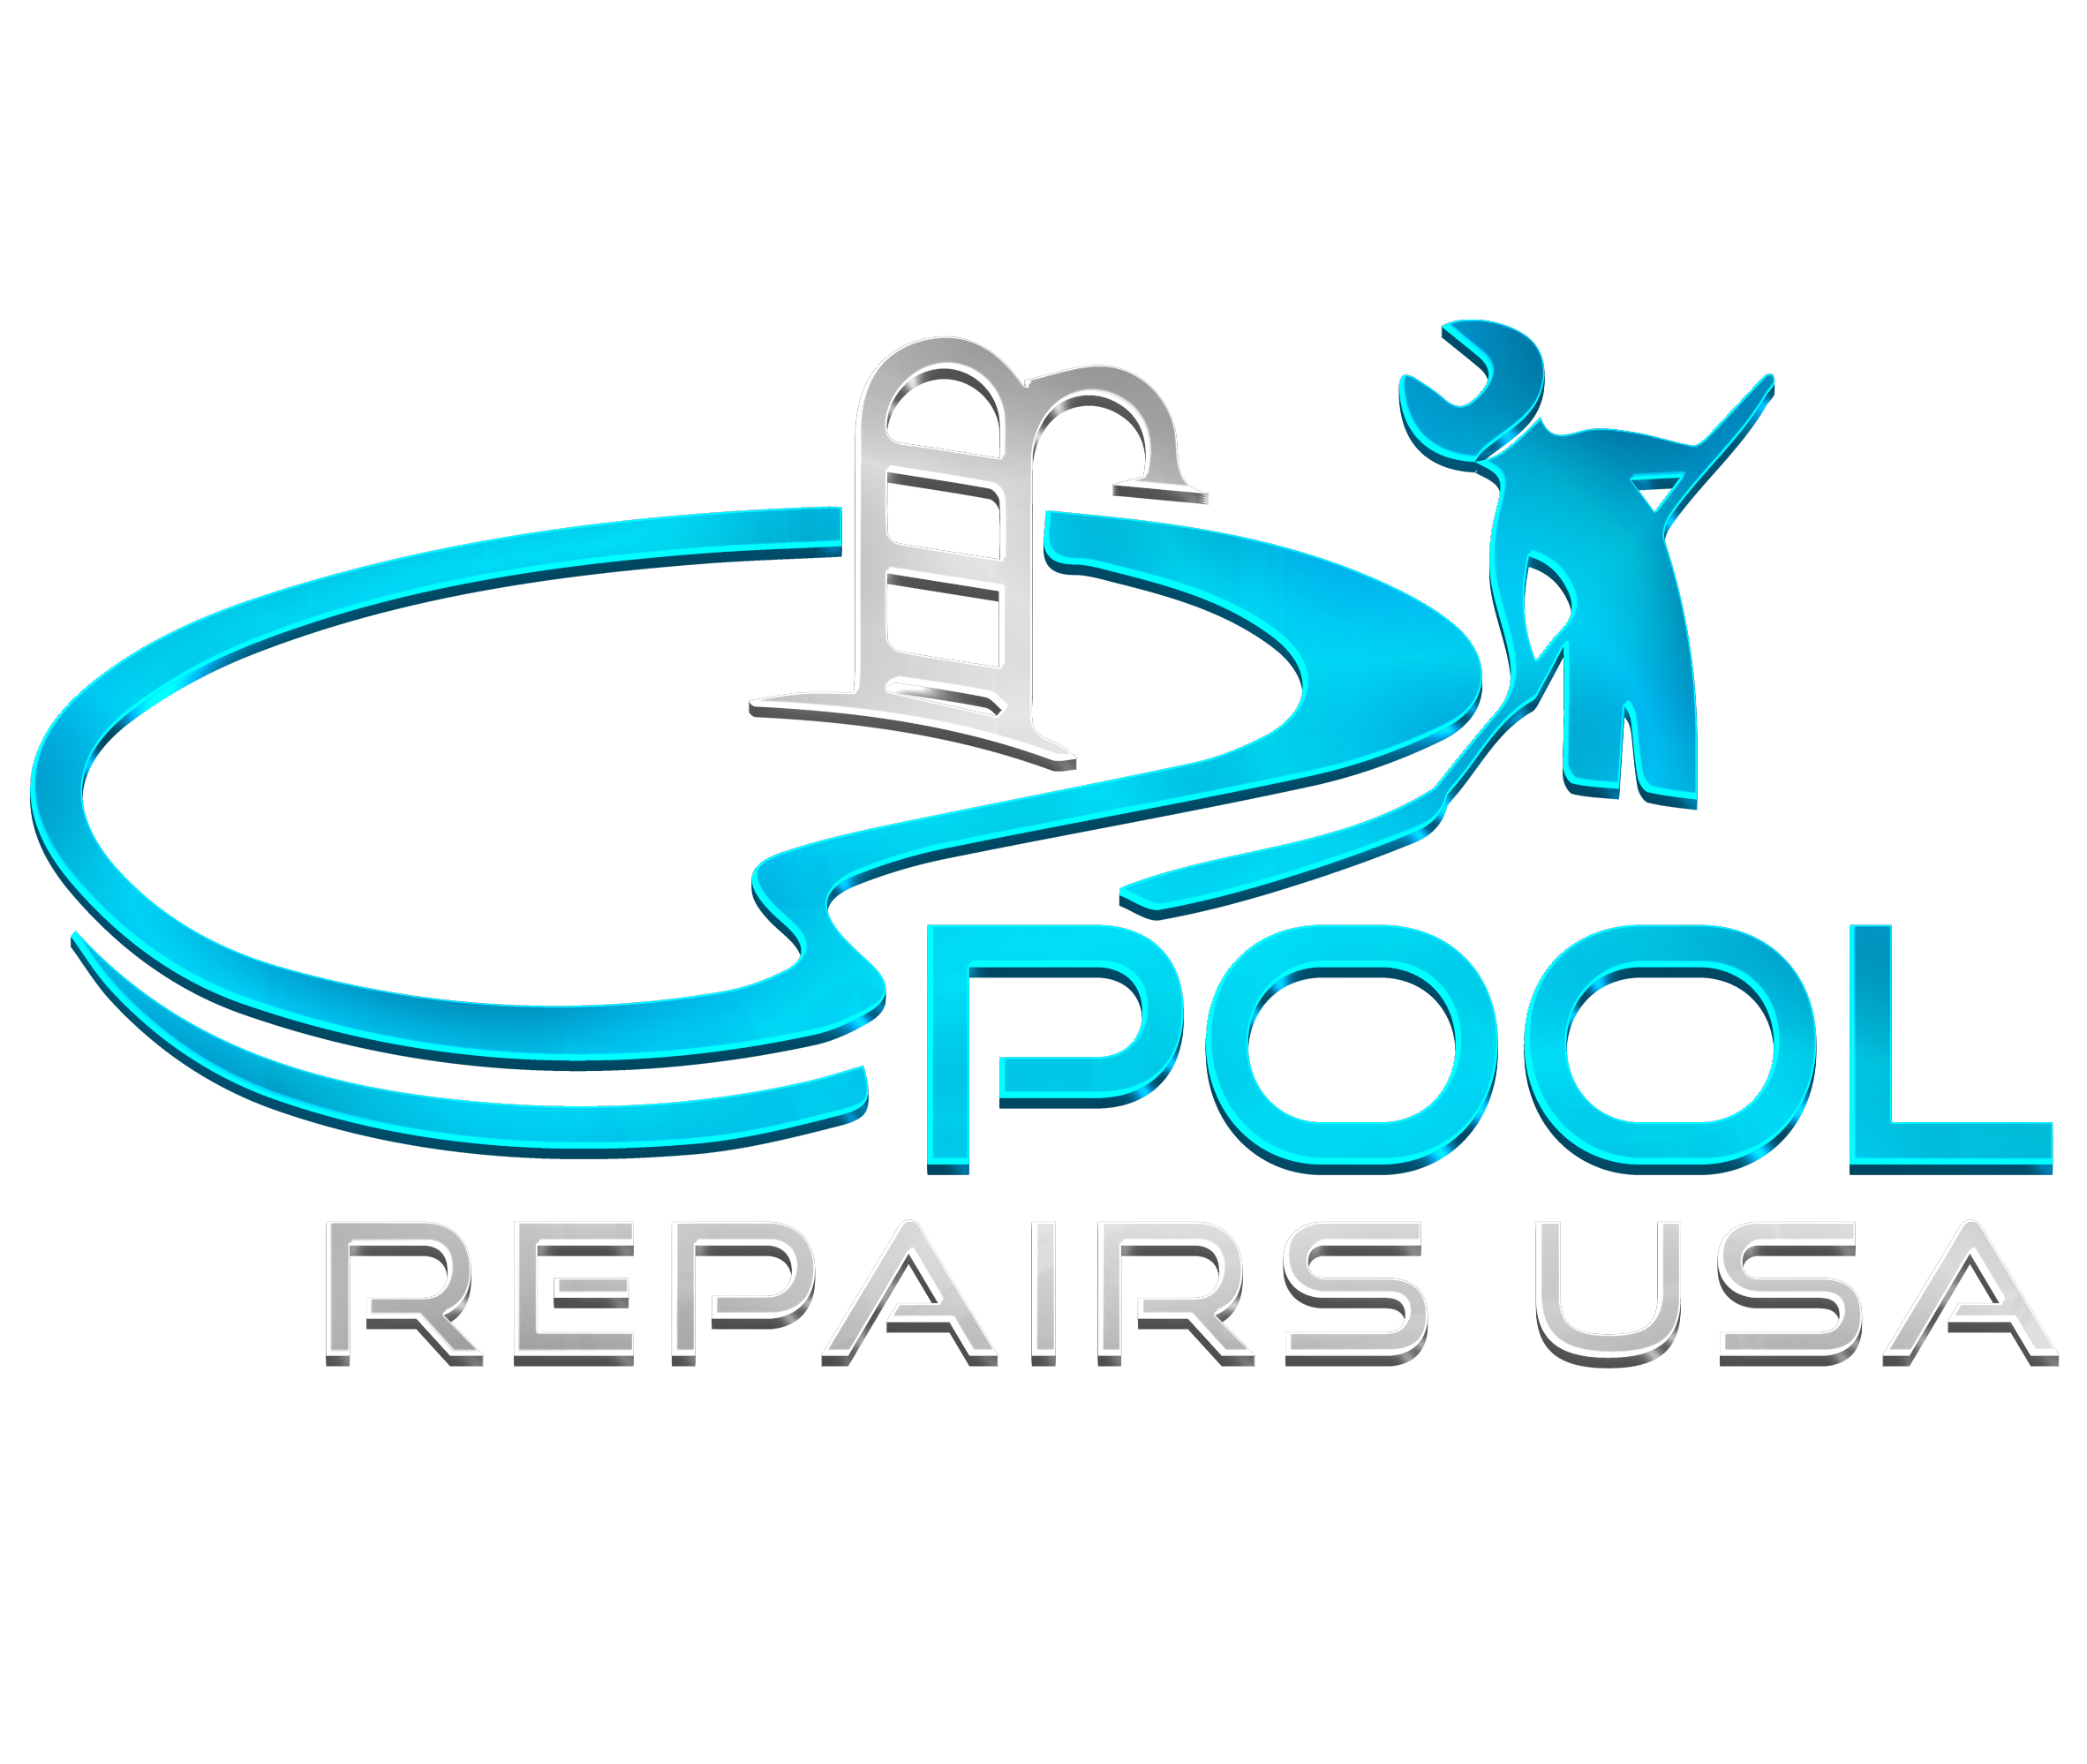 Pool Repairs USA logo no backgroud